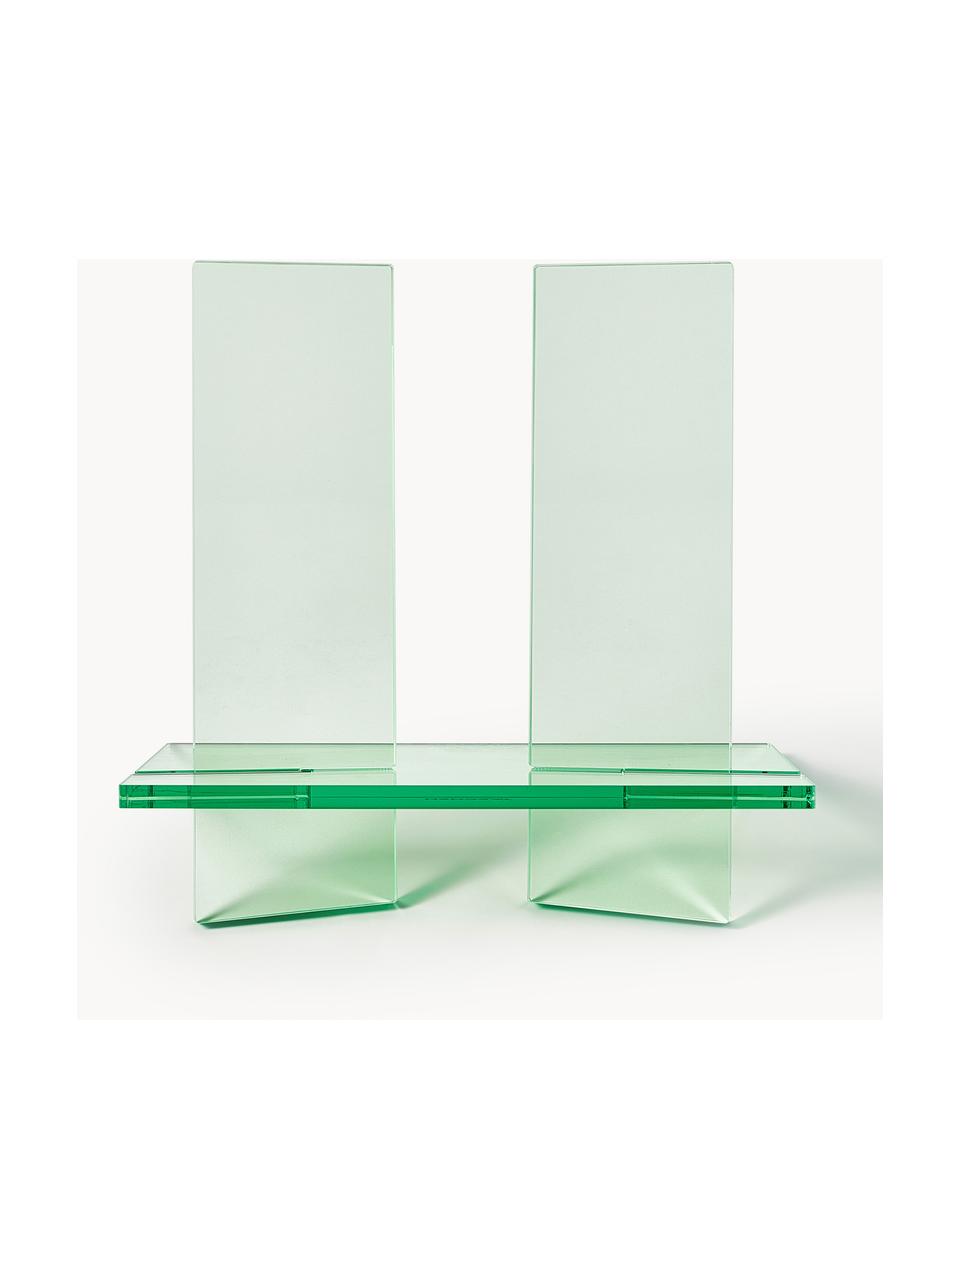 Leggio Crystal, larg. 36 cm x Alt. 34 cm, Vetro acrilico, Verde chiaro trasparente, Larg. 36 x Alt. 34 cm